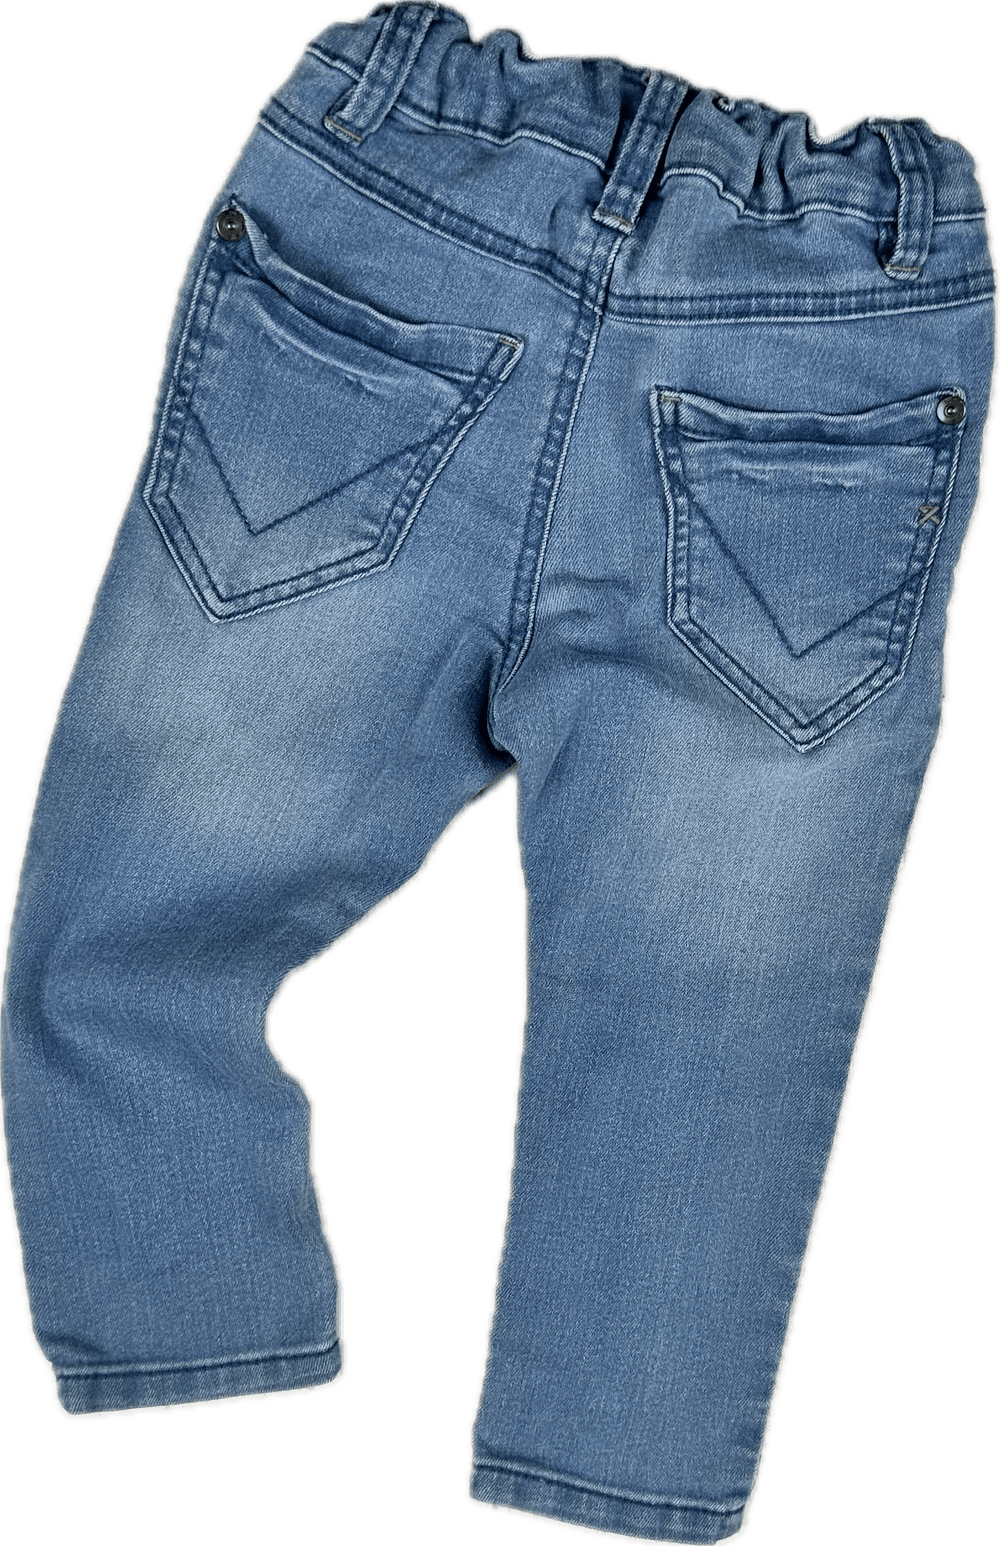 Name It Denmark Toddler Skinny Jeans - Size 12/18M - Jean Pool